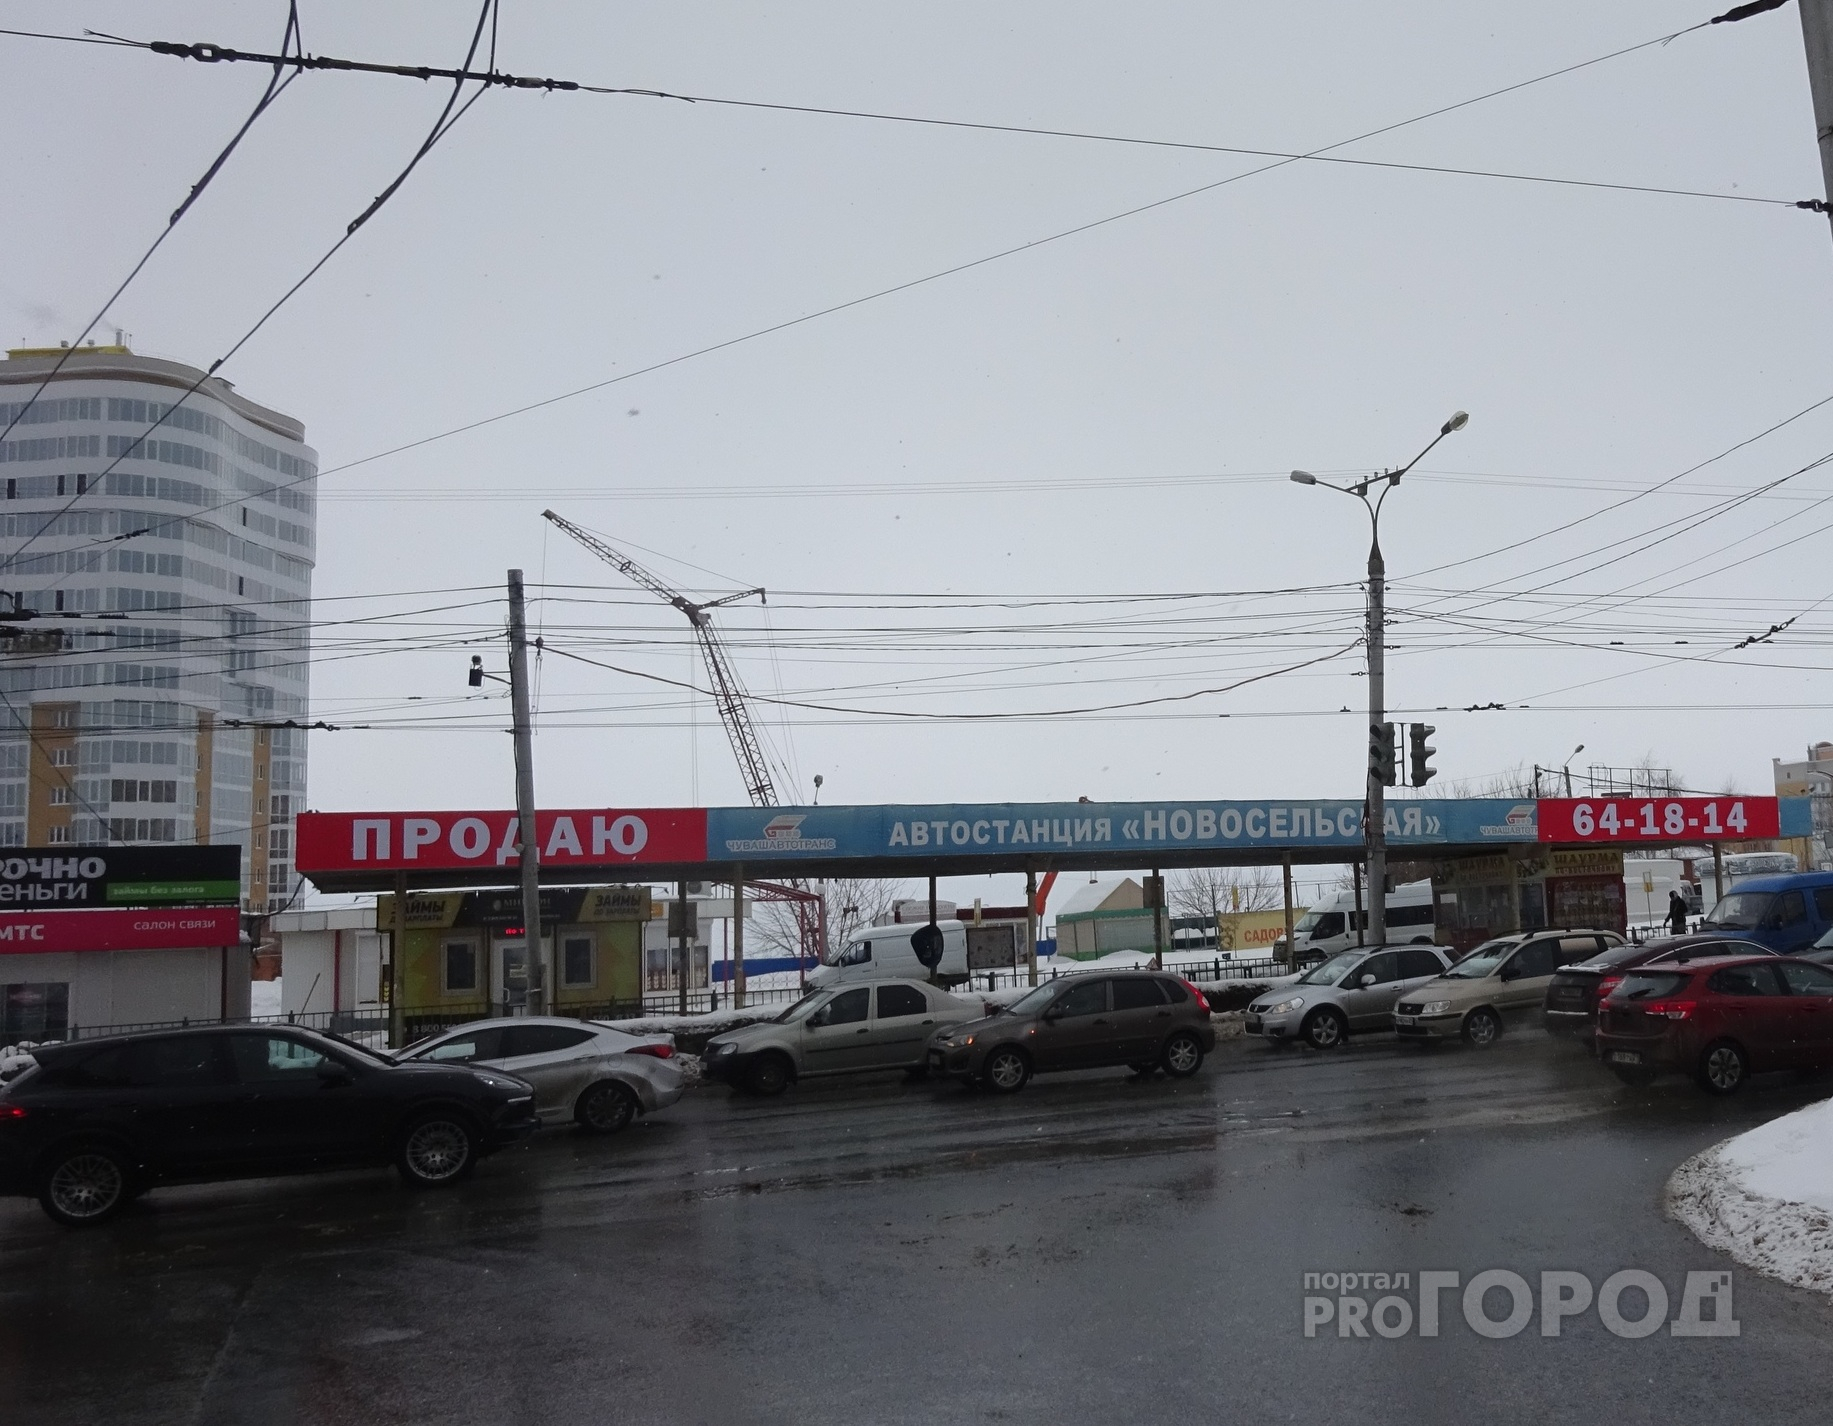 Новосельская автостанция ушла с молотка также по сниженной цене